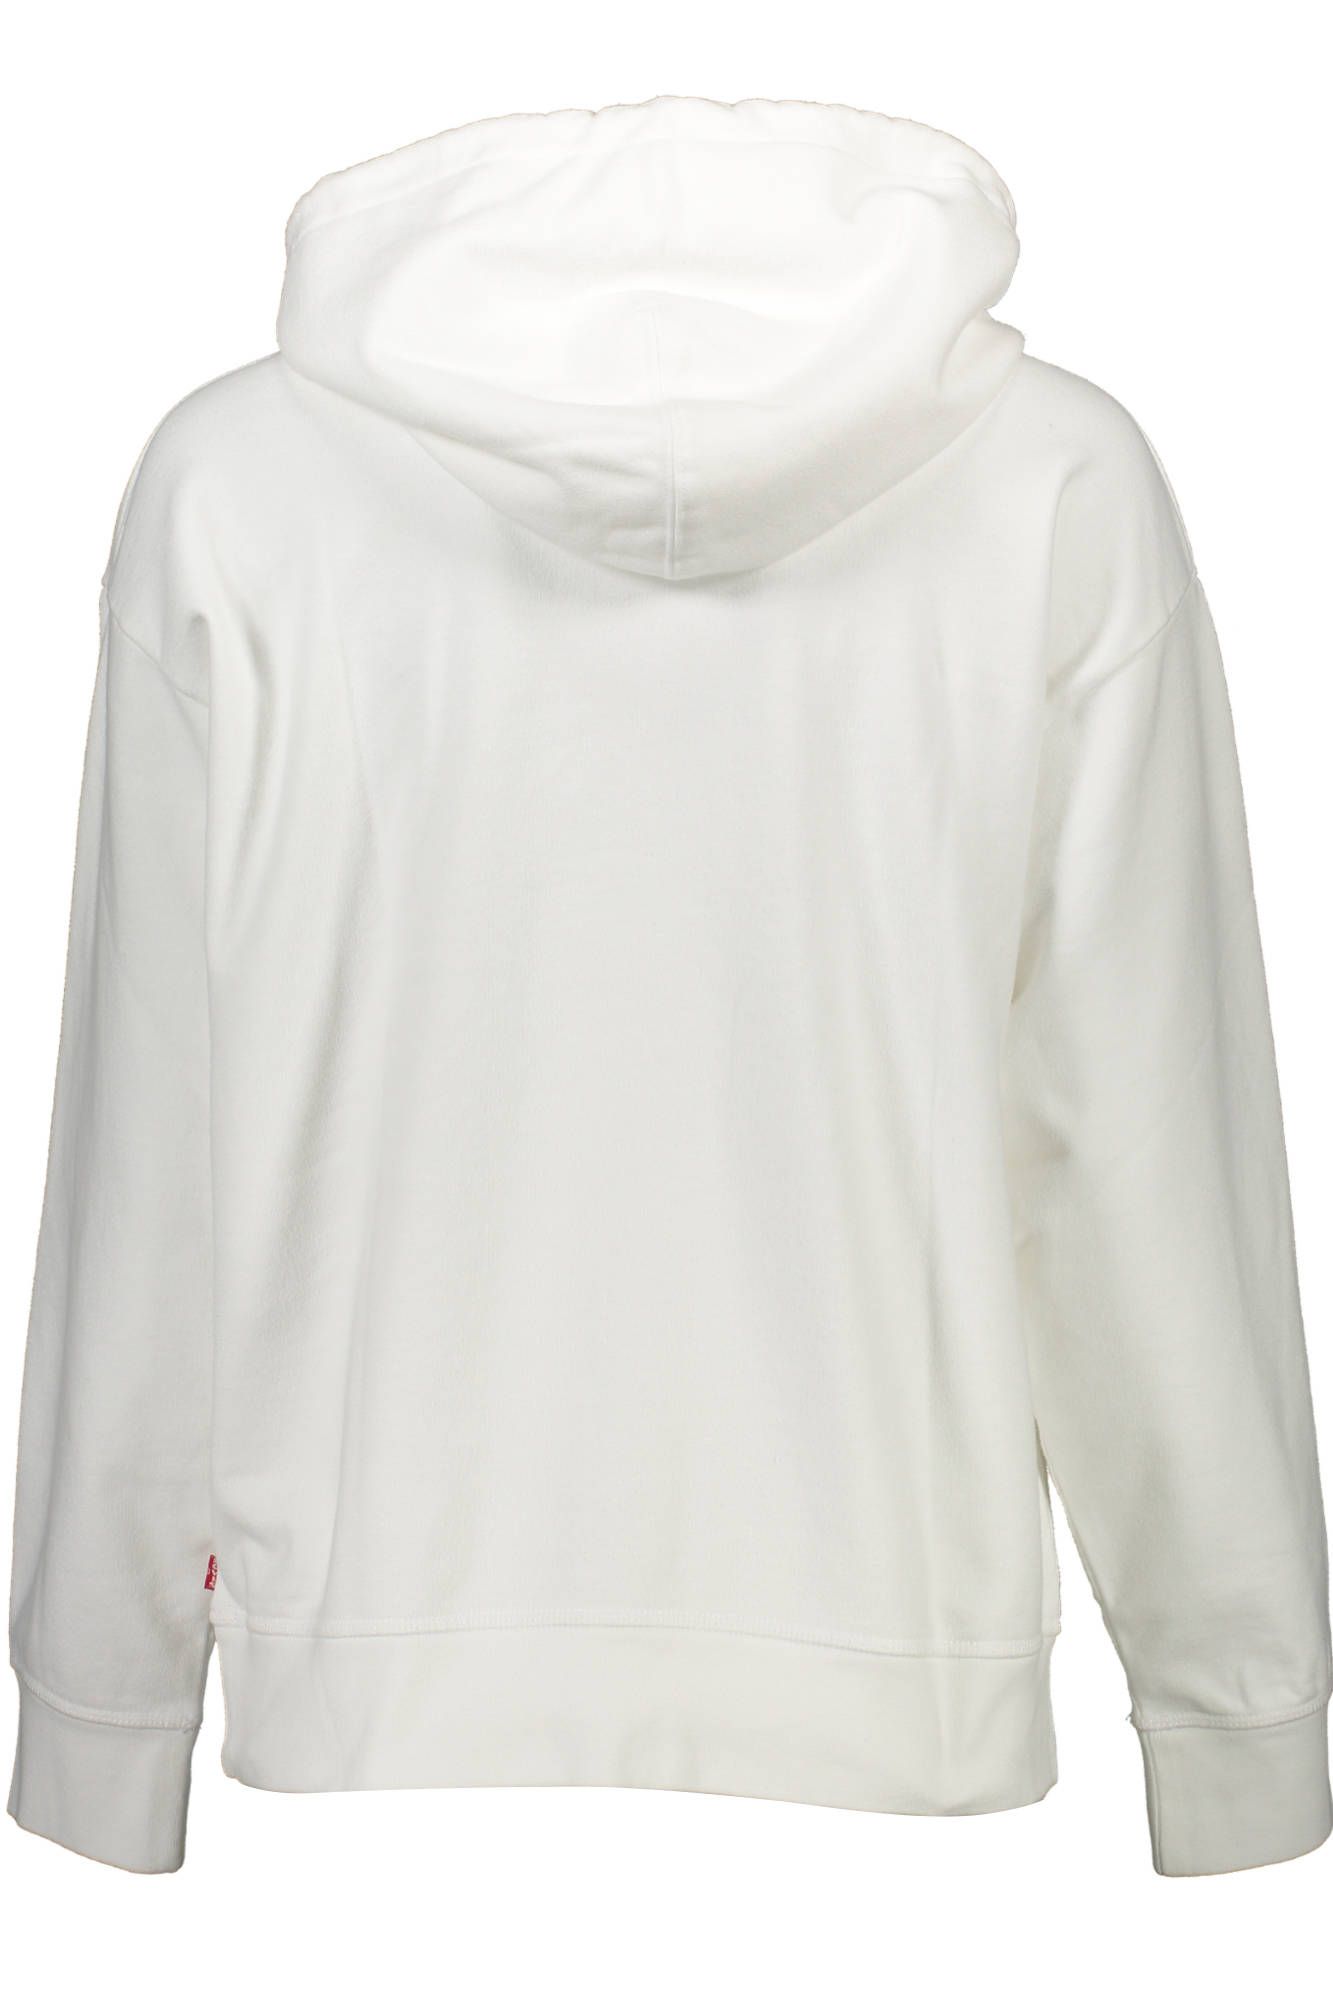 Levi'S White Cotton Sweater